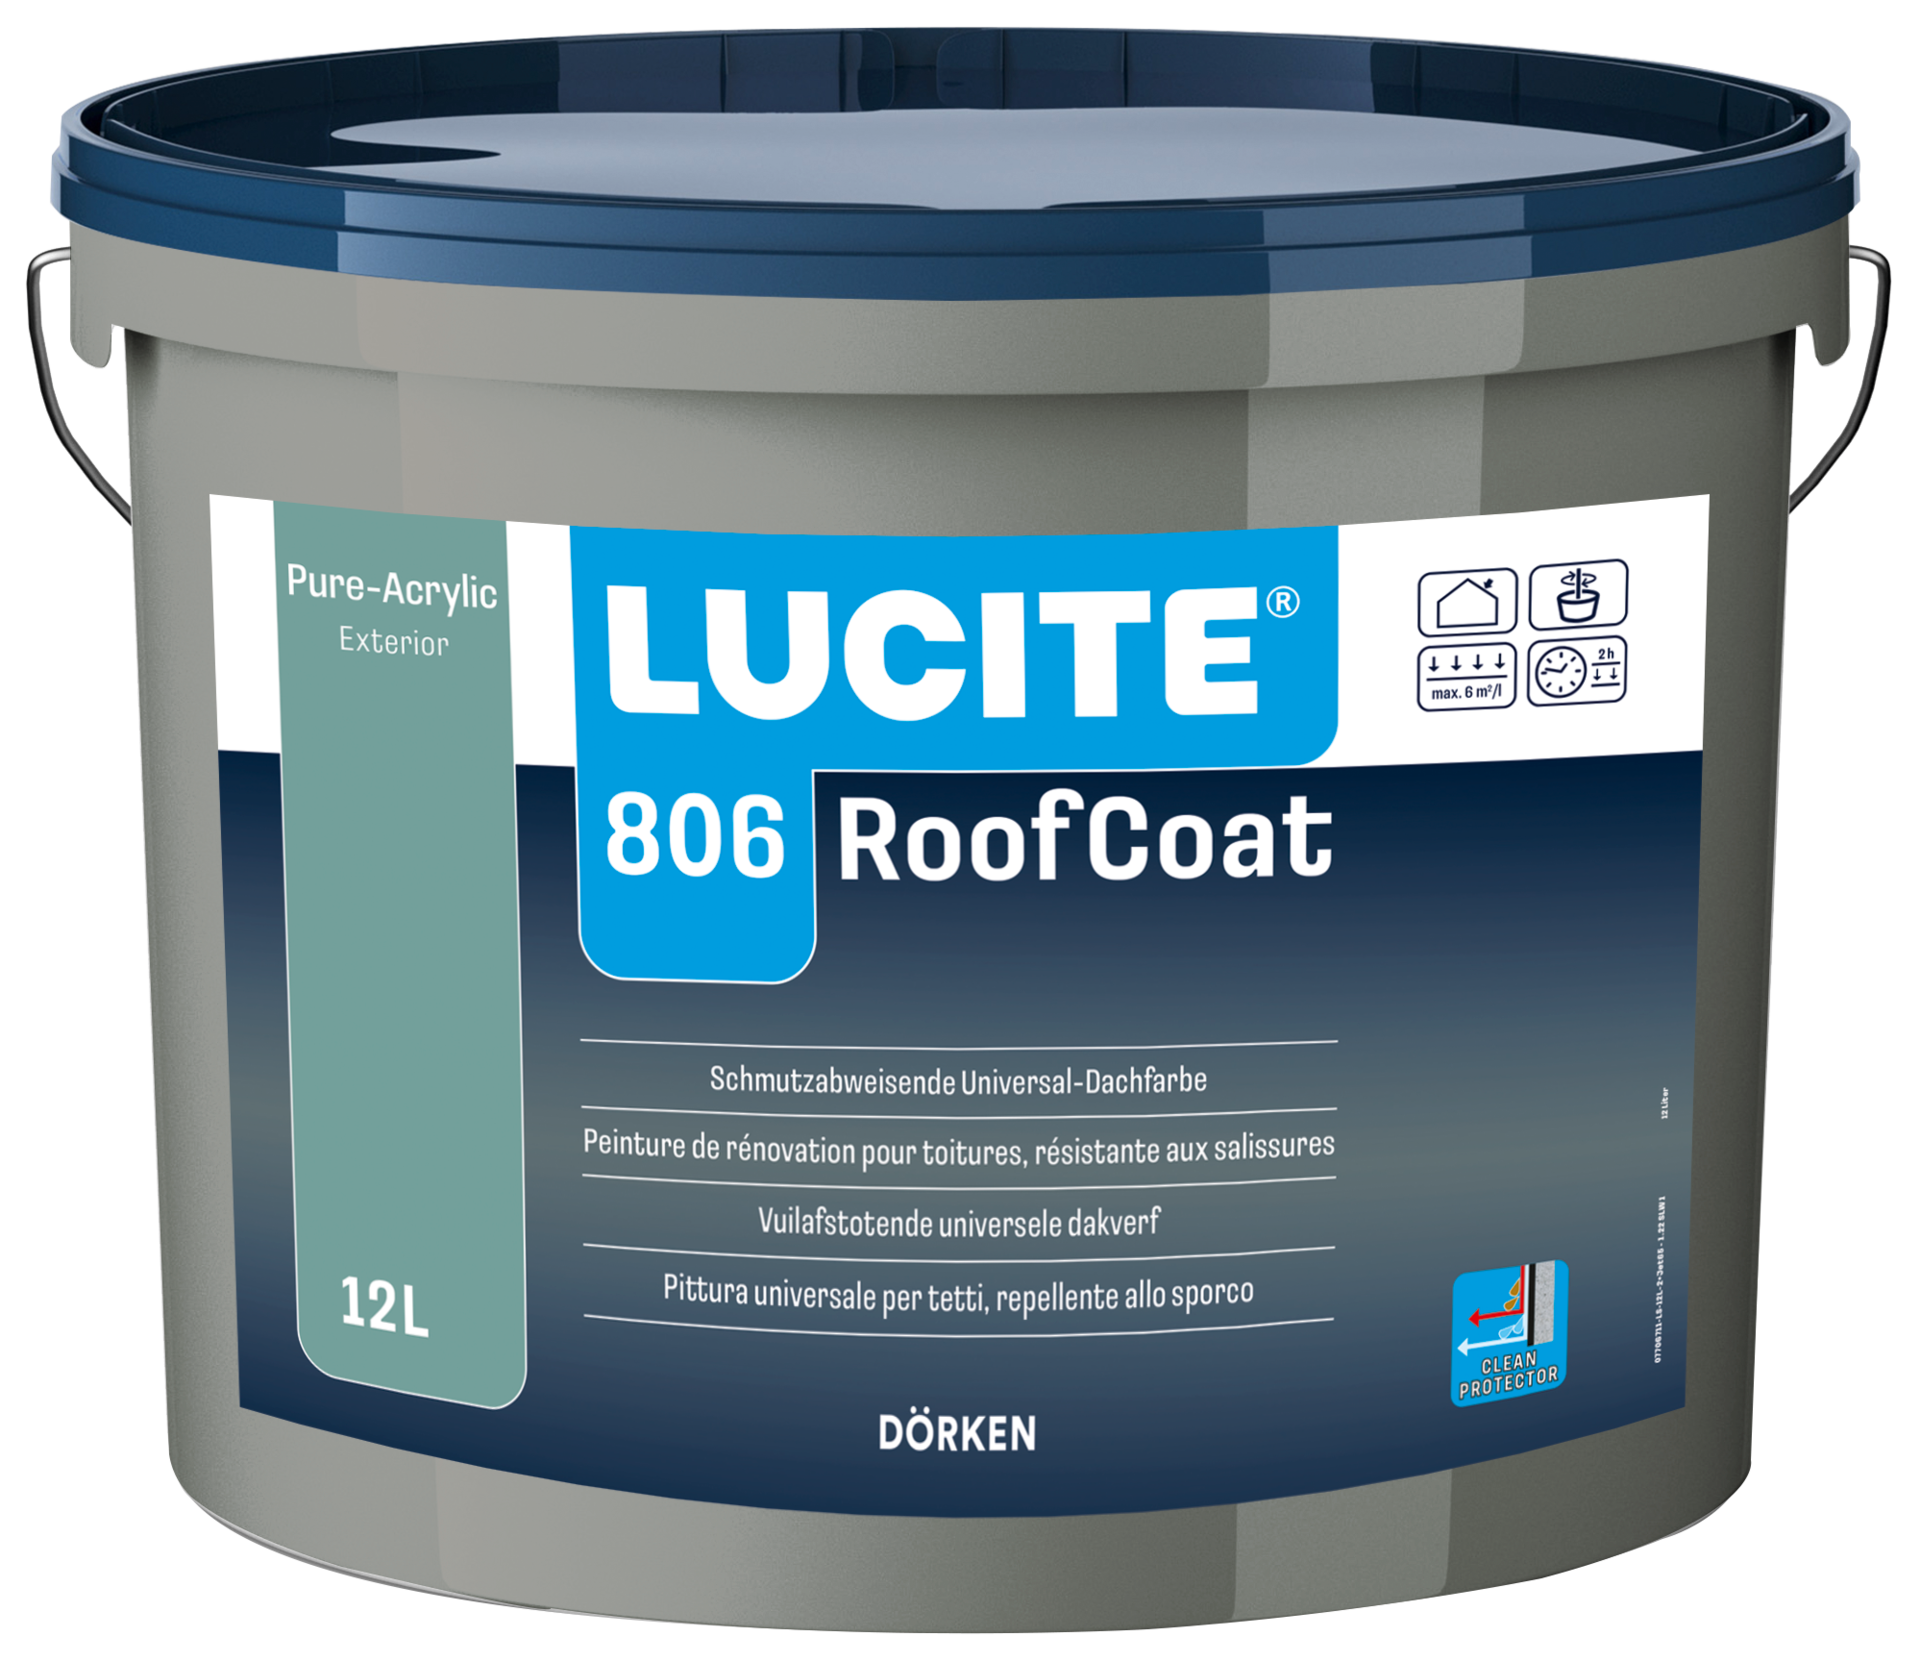 LUCITE® 806 RoofCoat